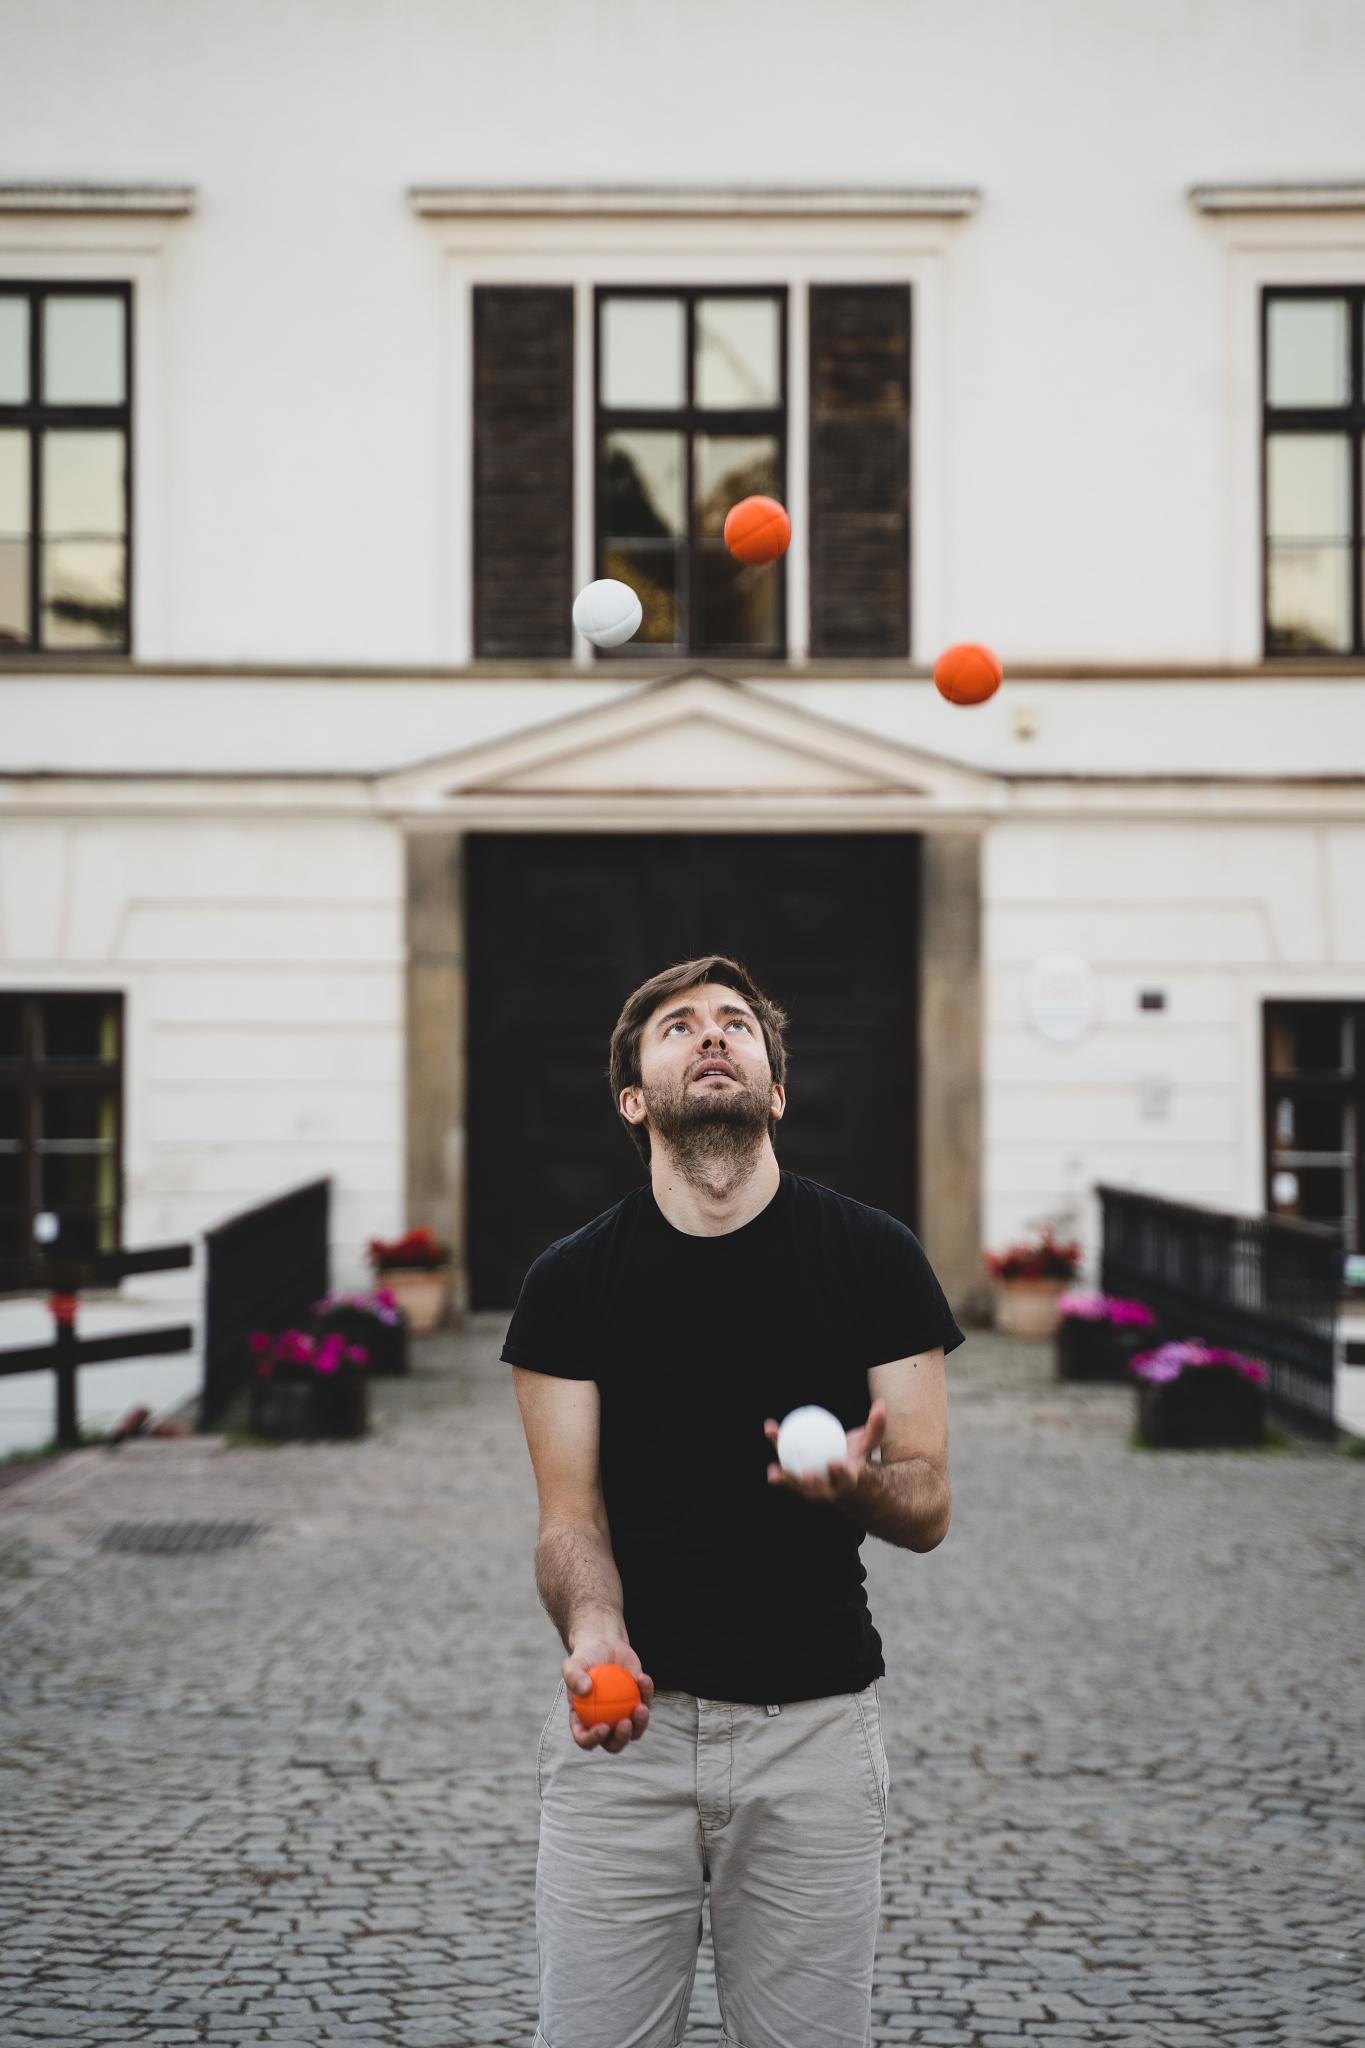 Portrét v pohybu: Žonglování s míčky